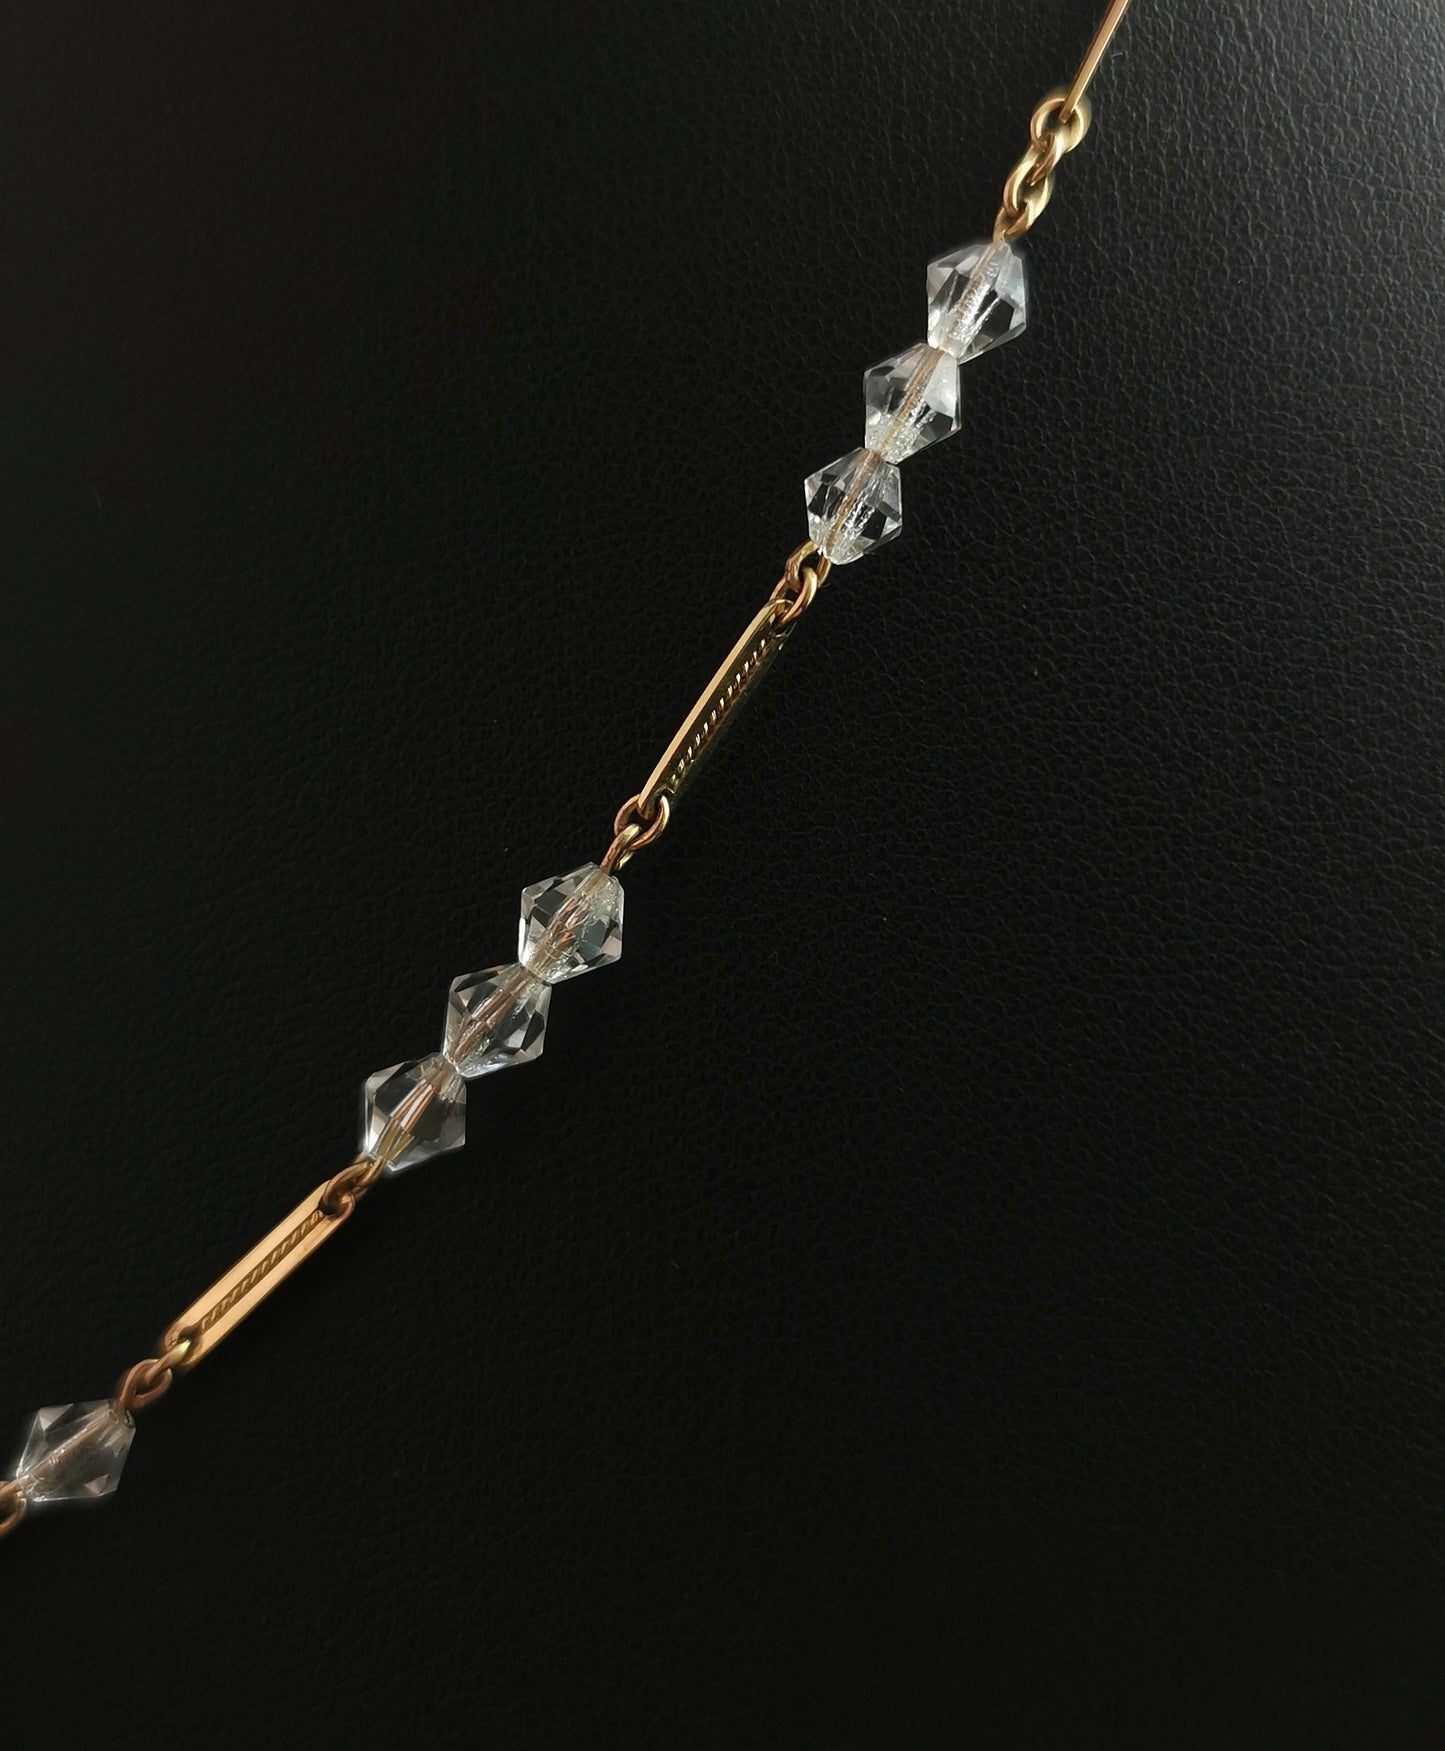 Vintage Art Deco 9ct gold Rock crystal pendant necklace, bar link